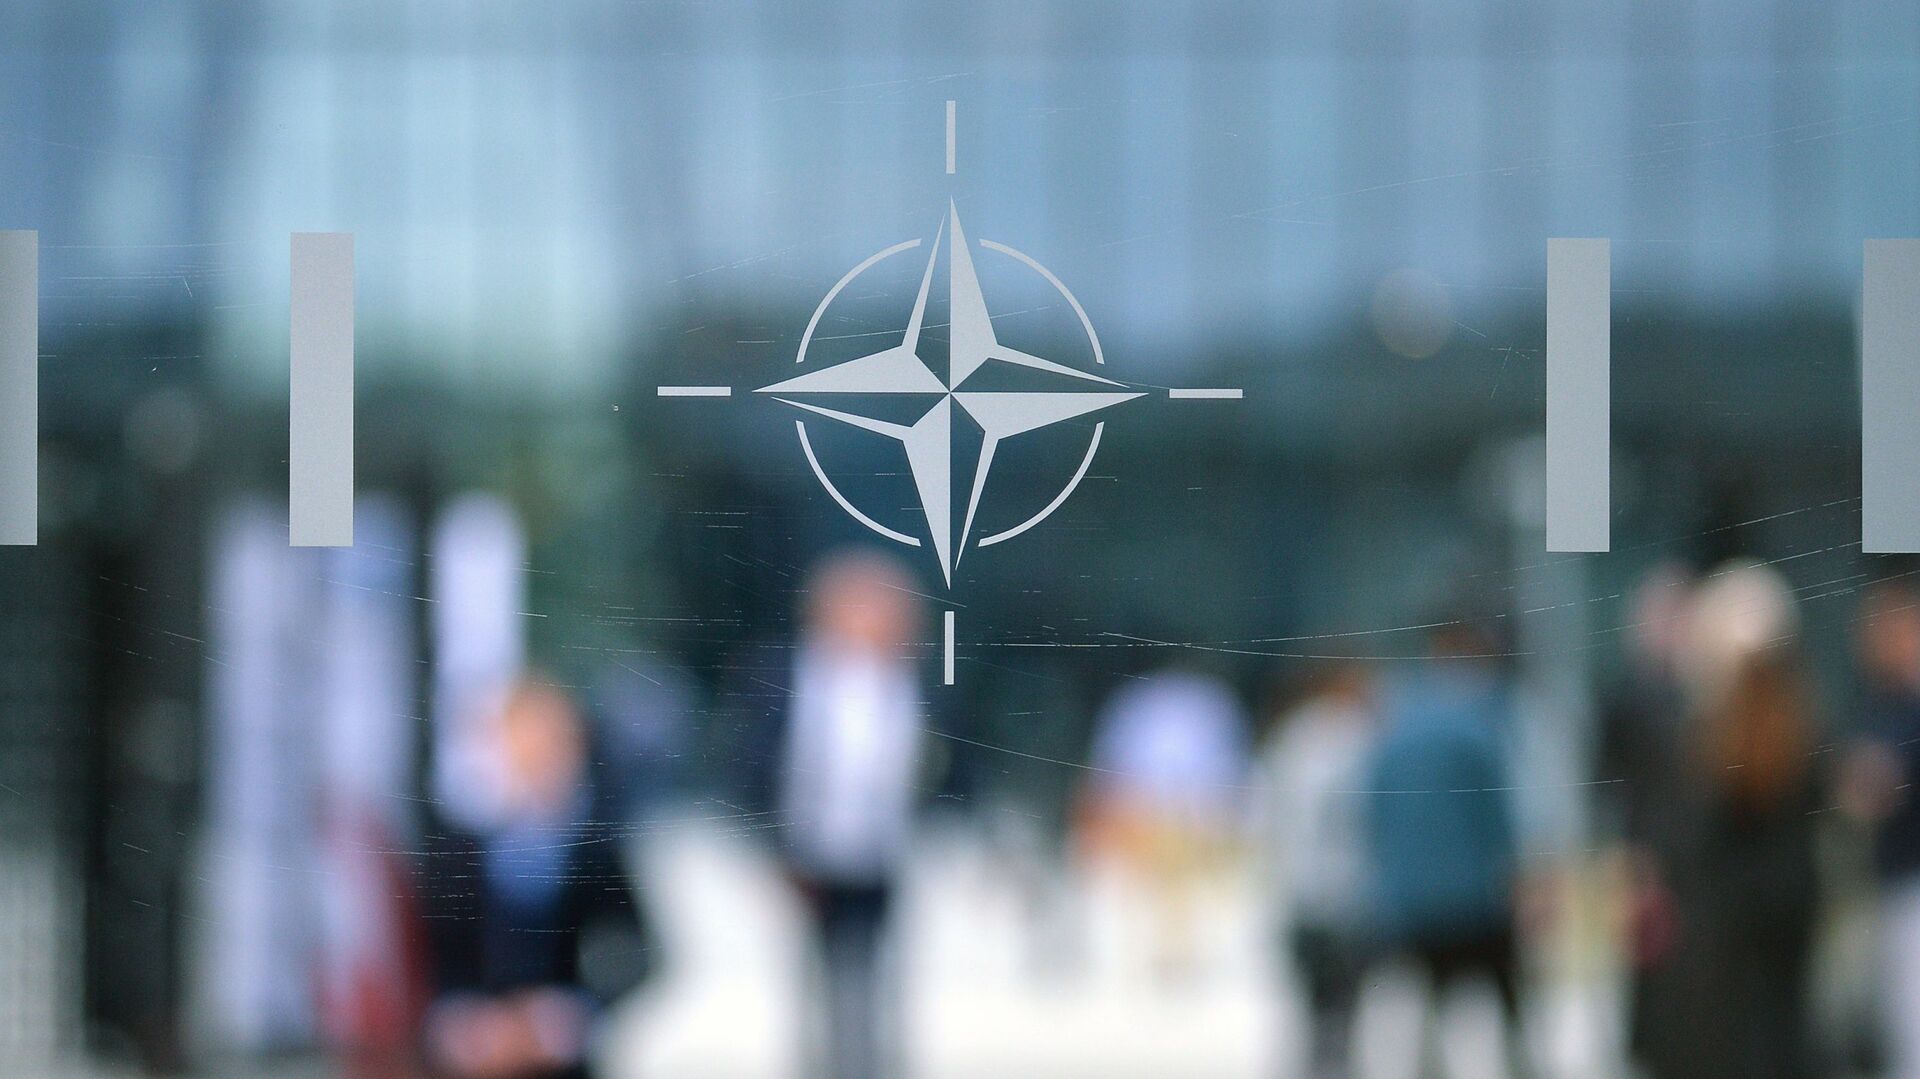 Эмблема Организации Североатлантического договора (НАТО) в Брюсселе.   - Sputnik Абхазия, 1920, 11.06.2021